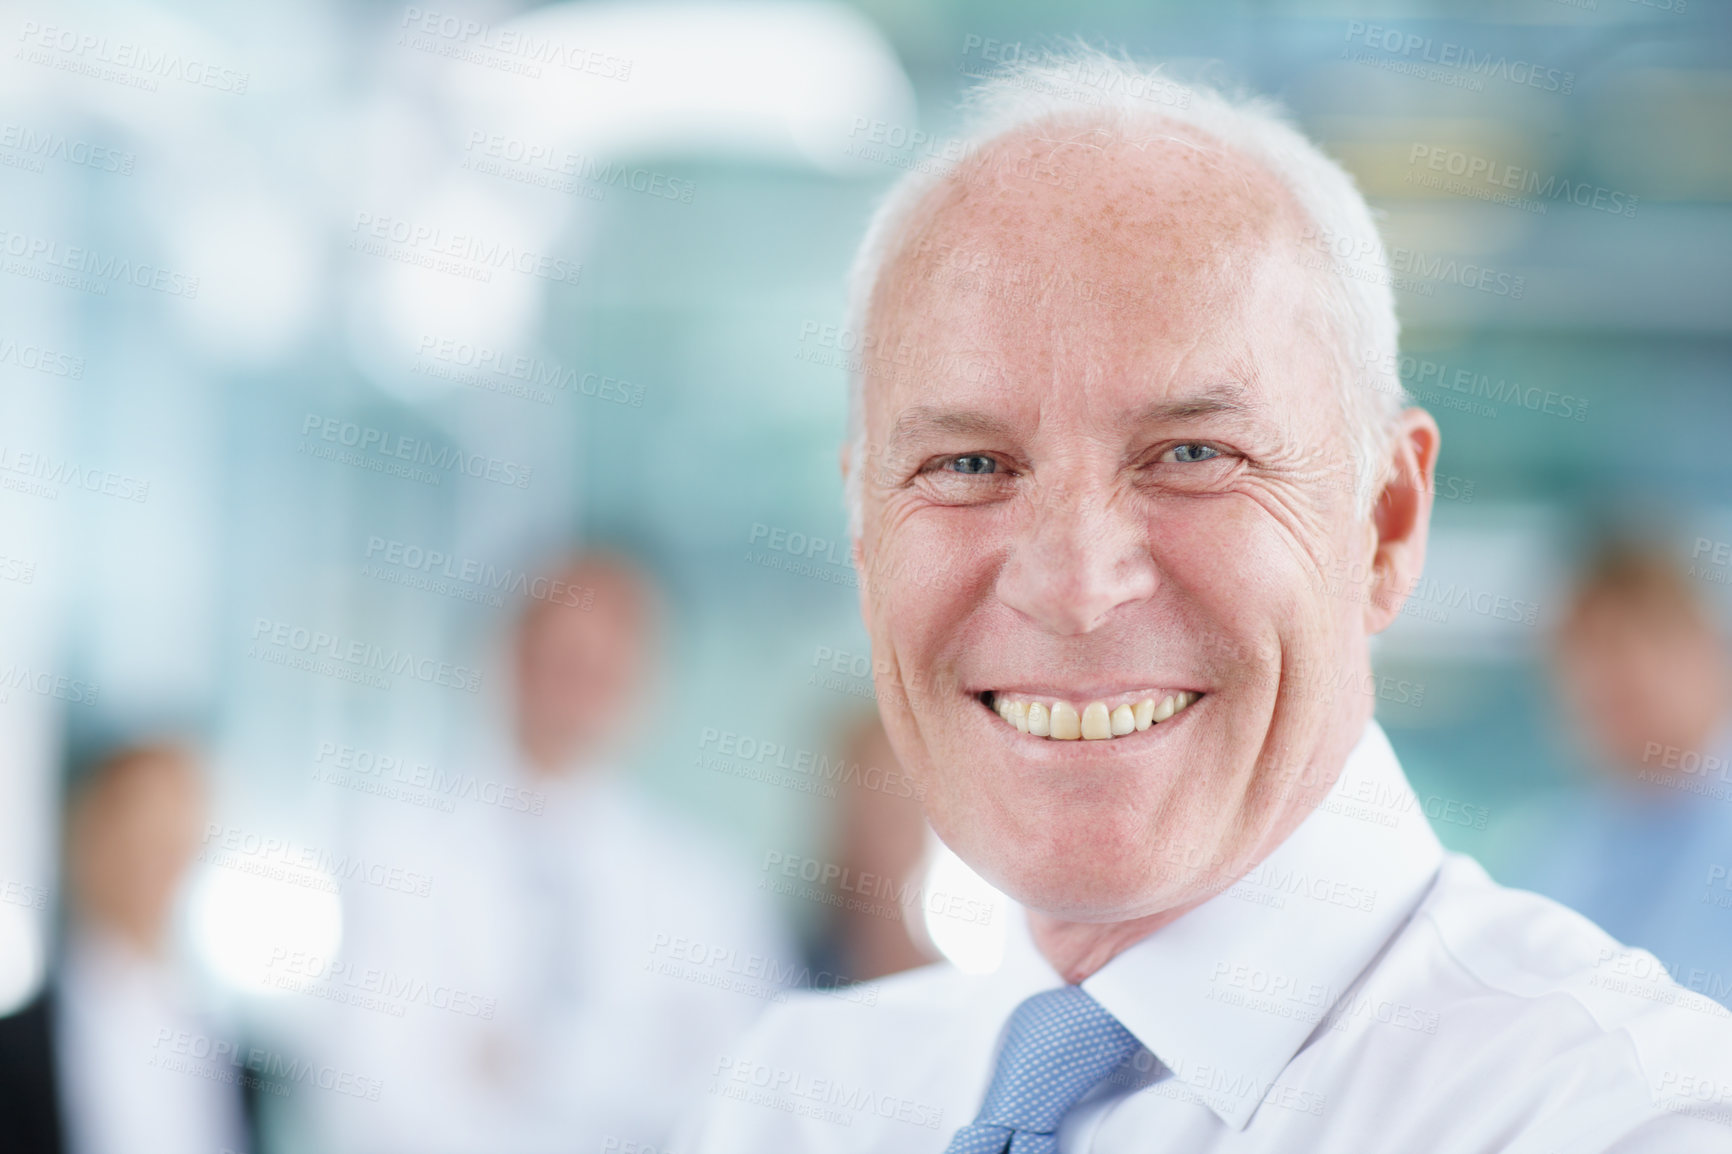 Buy stock photo Closeup portrait of a smiling senior businessman - copyspace